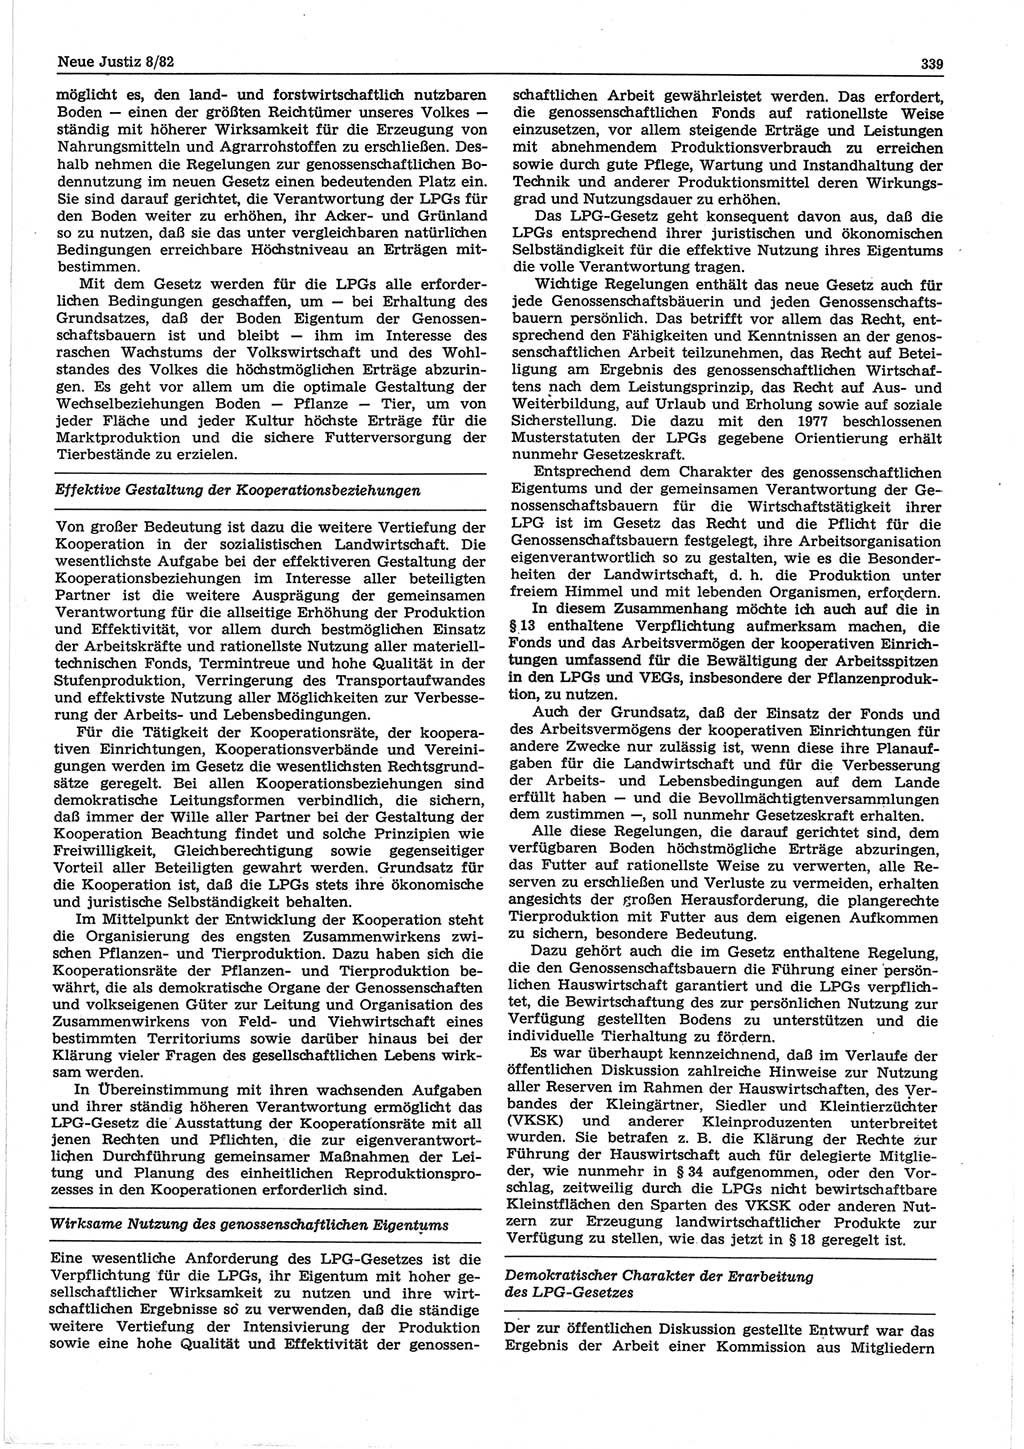 Neue Justiz (NJ), Zeitschrift für sozialistisches Recht und Gesetzlichkeit [Deutsche Demokratische Republik (DDR)], 36. Jahrgang 1982, Seite 339 (NJ DDR 1982, S. 339)